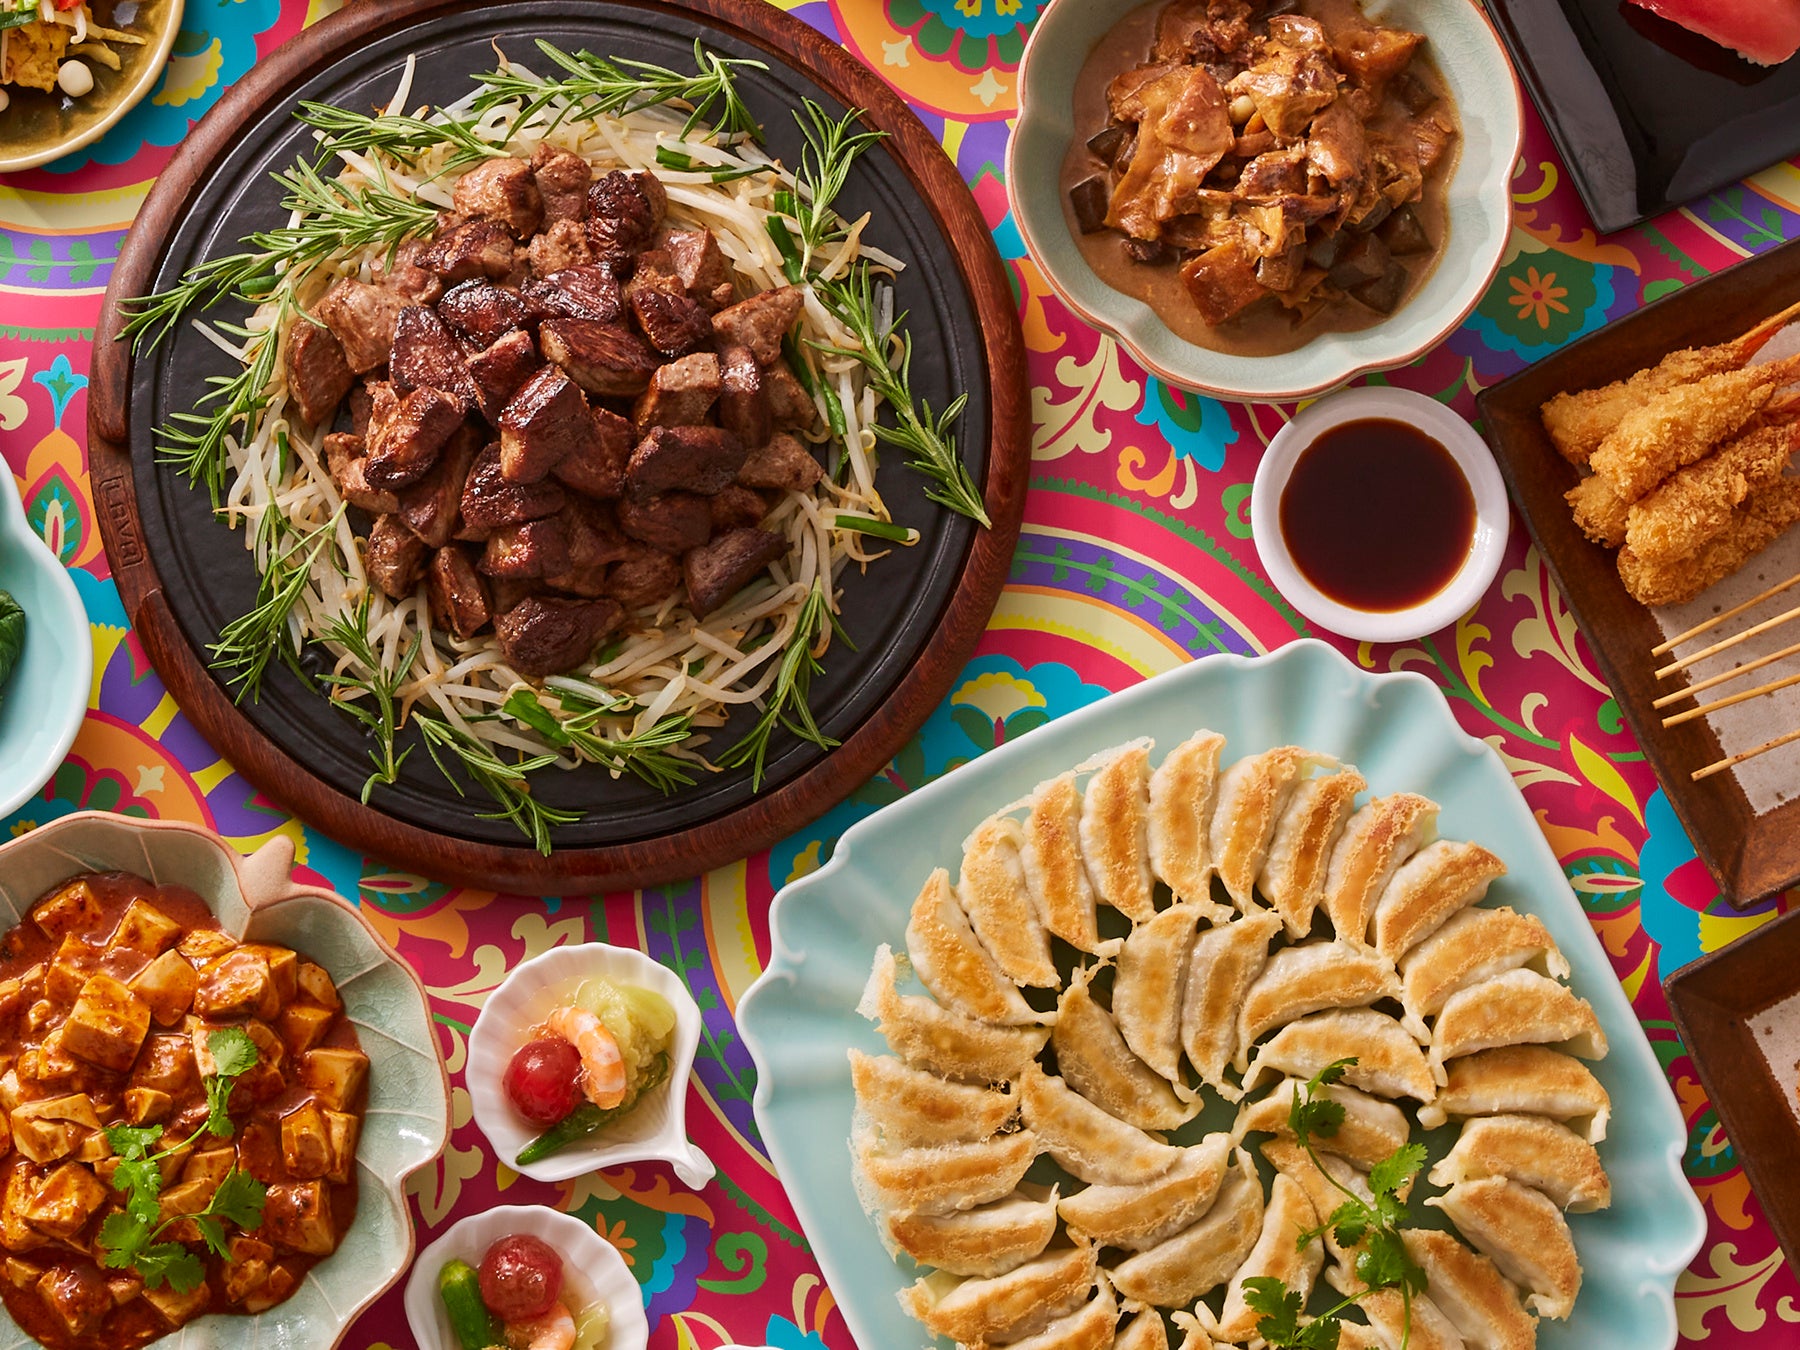 餃子や麻婆豆腐など親しみがあるアジア料理に、牛ステーキ、串カツなど、お子さまと一緒に楽しめるメニューを揃える。